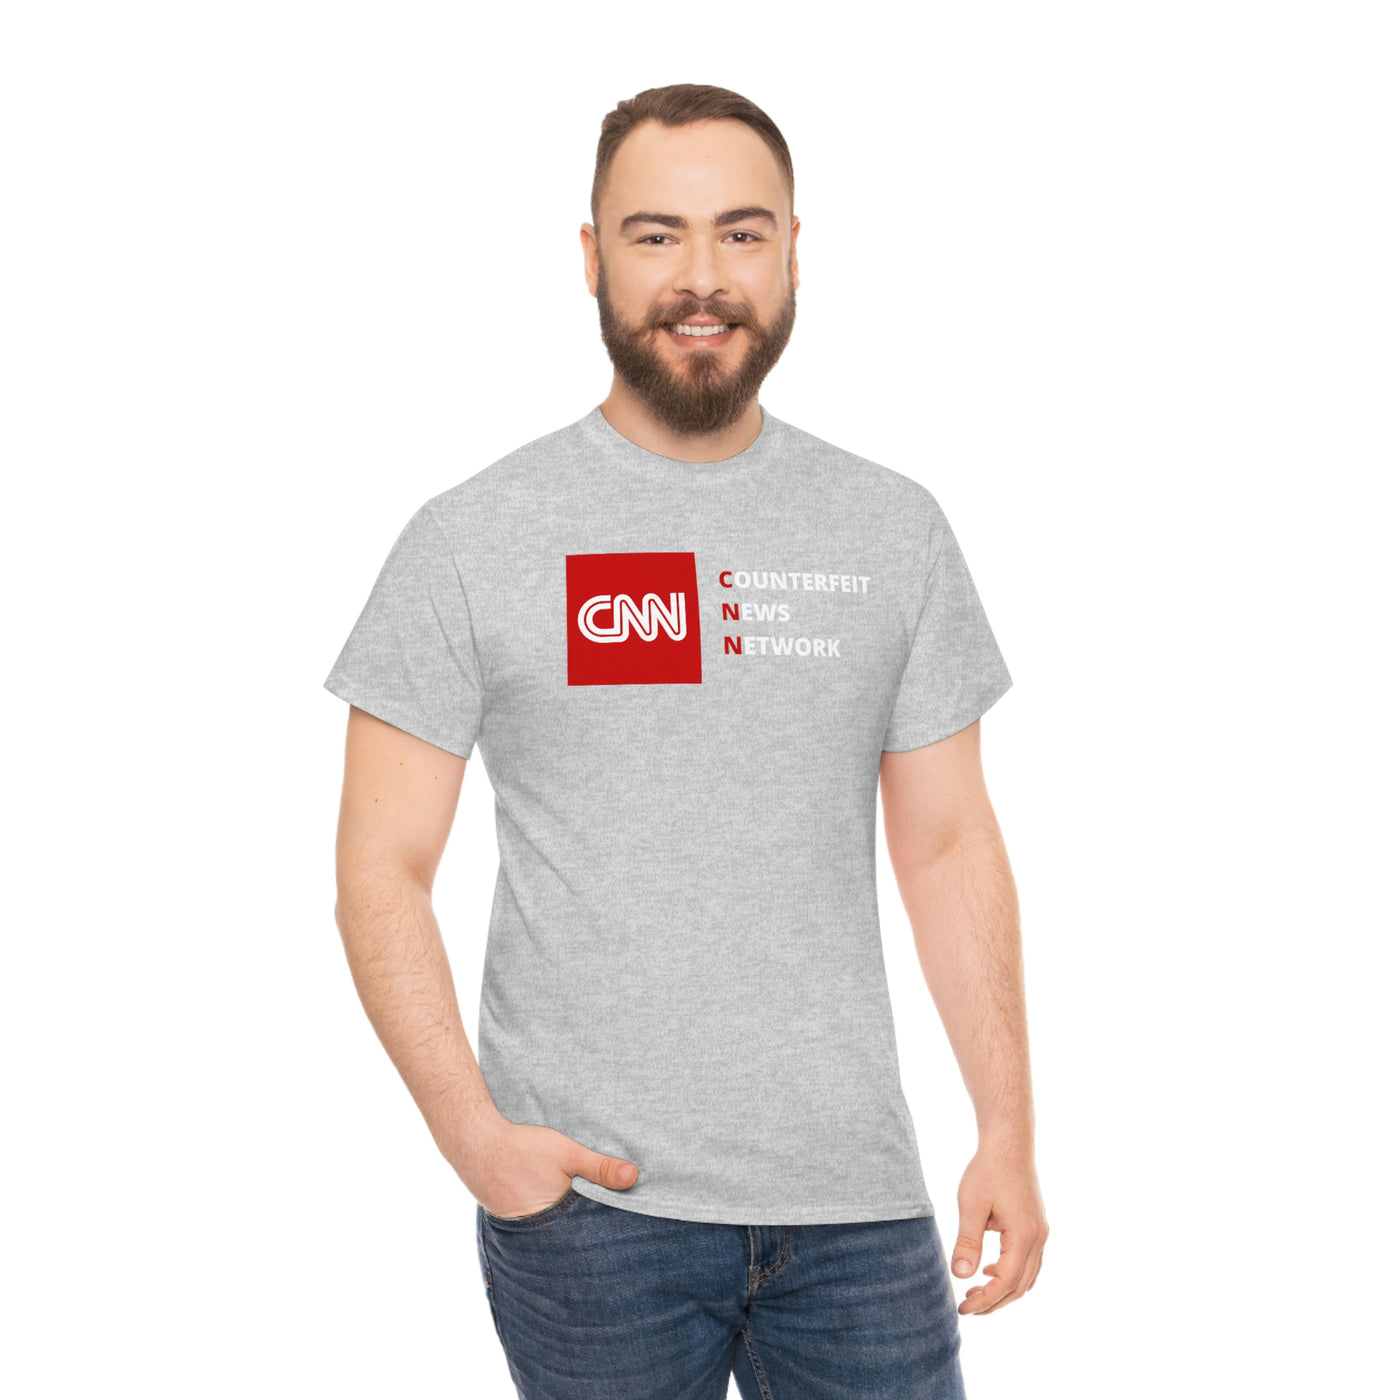 CNN Counterfeit News Network Tee